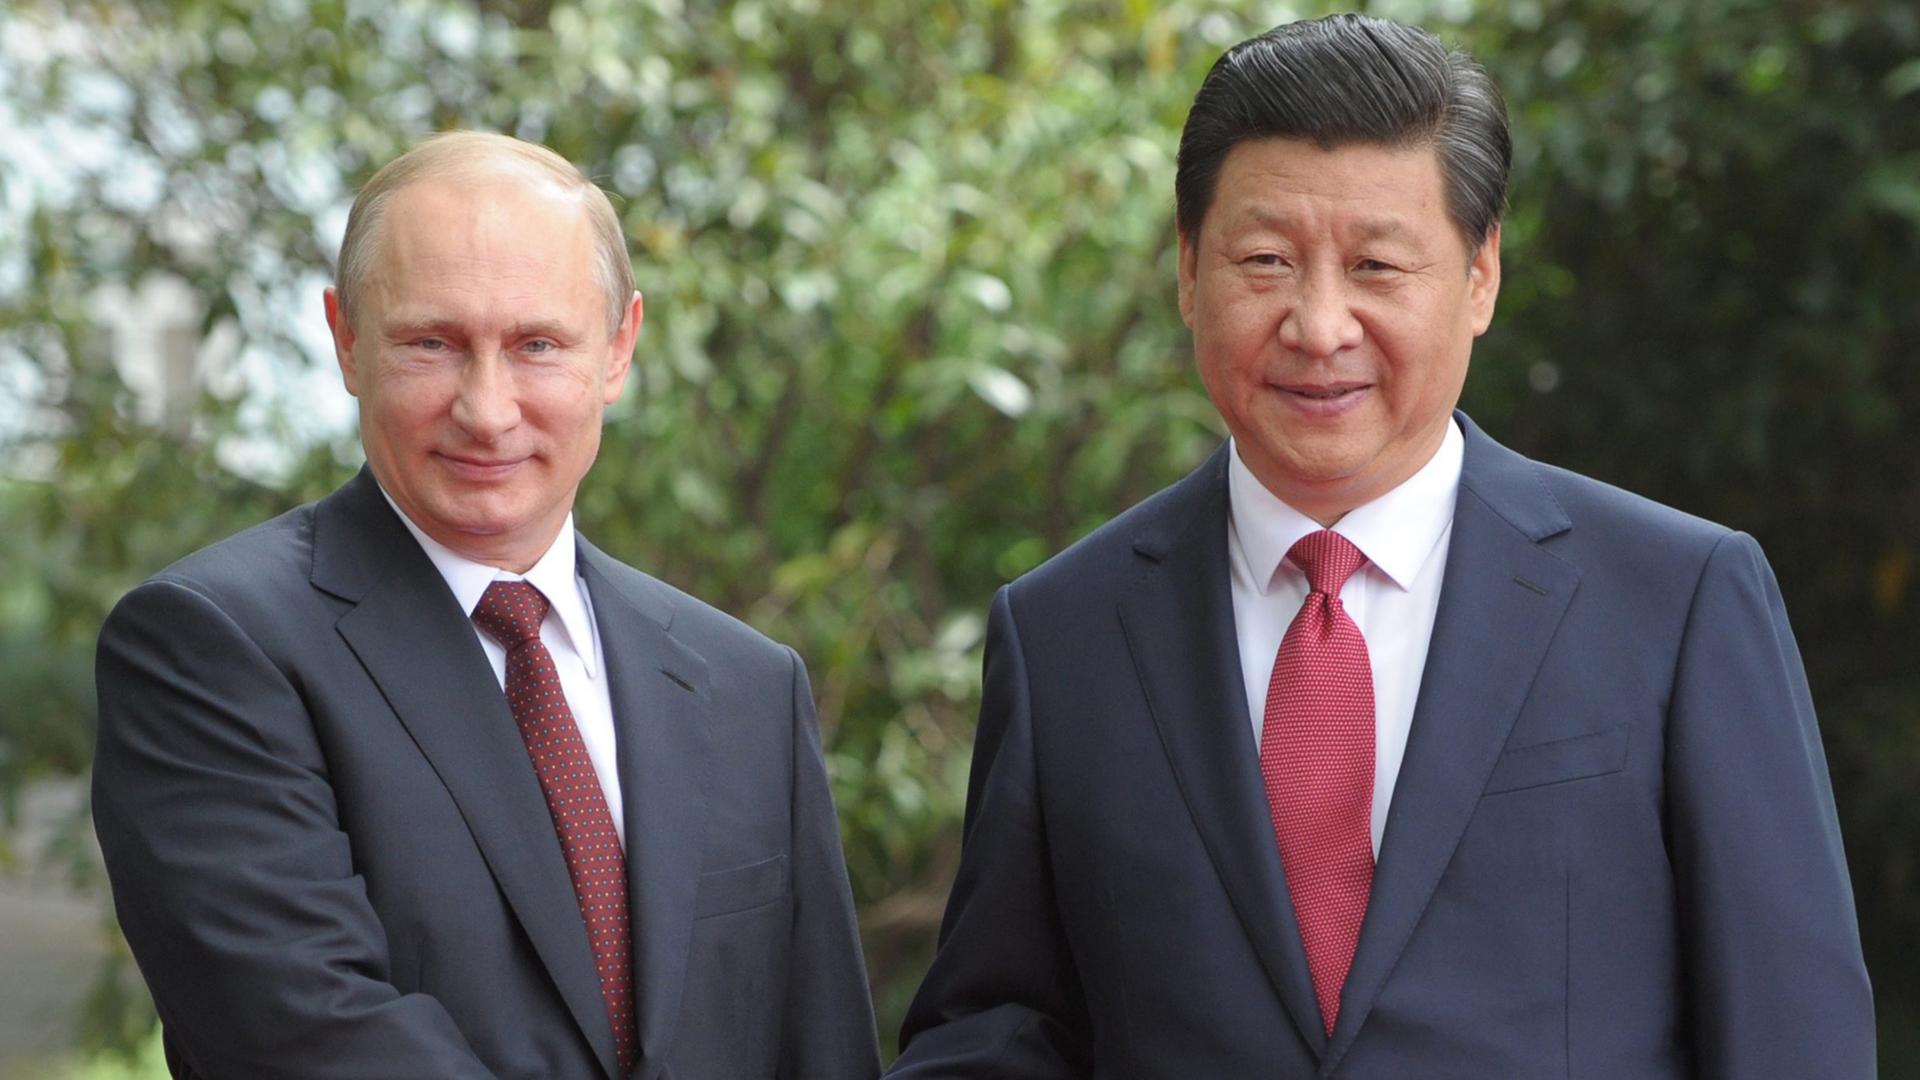 Begrüßung unter Präsidenten: Wladimir Putin (l.) und Xi Jinping